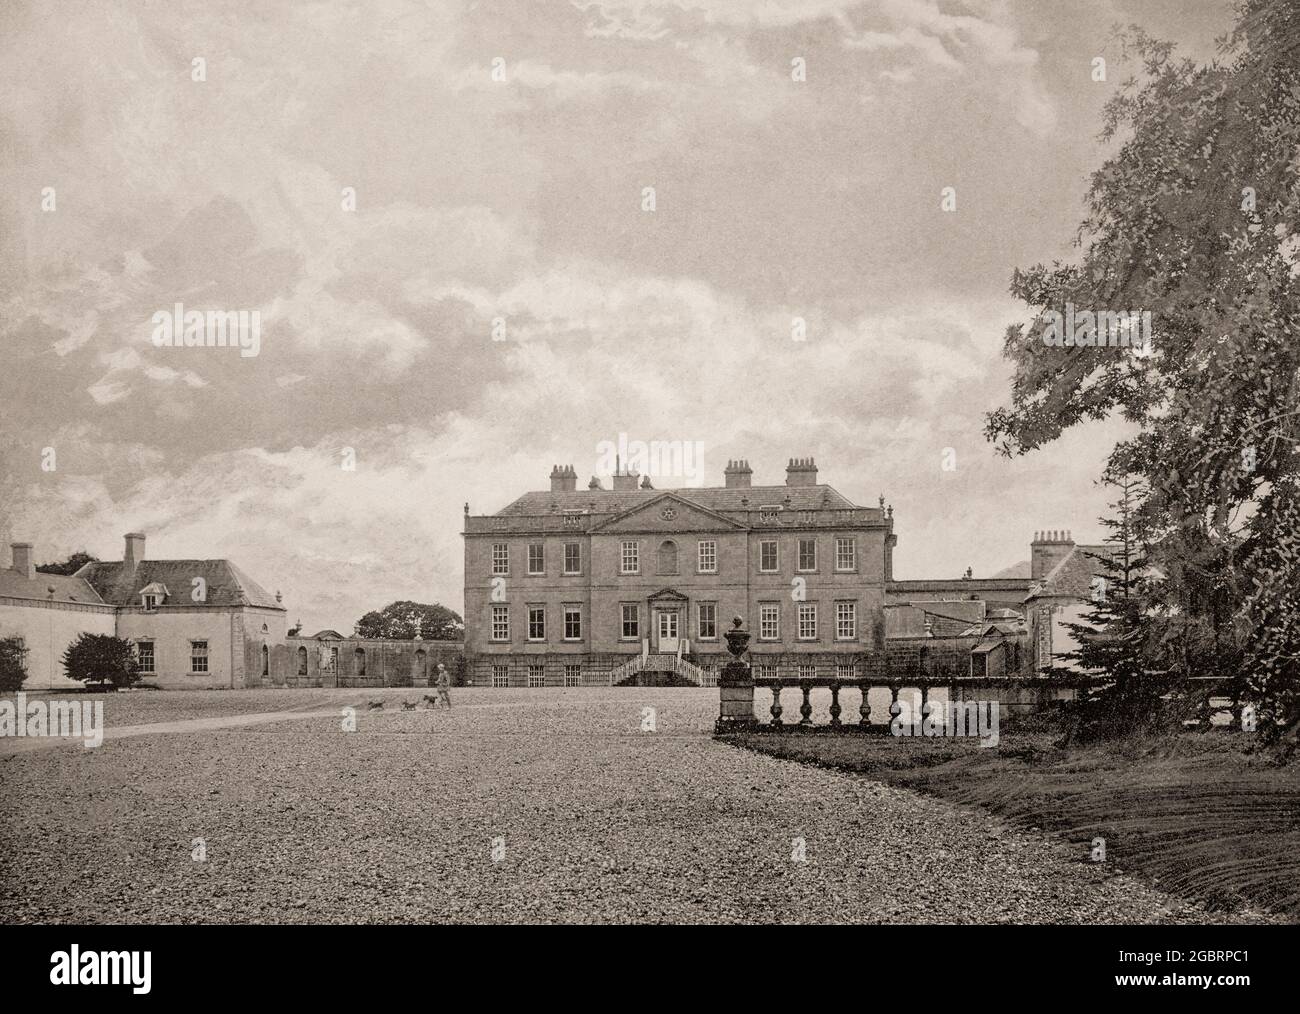 Eine Ansicht des Bessbrough House aus dem späten 19. Jahrhundert vor den Toren von Piltown in der Grafschaft Kilkenny, dem Familiensitz der Ponsonby-Dynastie, Earls of Bessborough. Das ursprünglich in den 1740er Jahren nach einem Entwurf von Francis Bindon erbaute Haus wurde im Februar 1923, während des irischen Bürgerkrieges, durch Feuer entkuttet. Allerdings wurde es Ende 1929 für den 9. Earl of Bessborough wieder aufgebaut und wurde später eine landwirtschaftliche Hochschule. Stockfoto